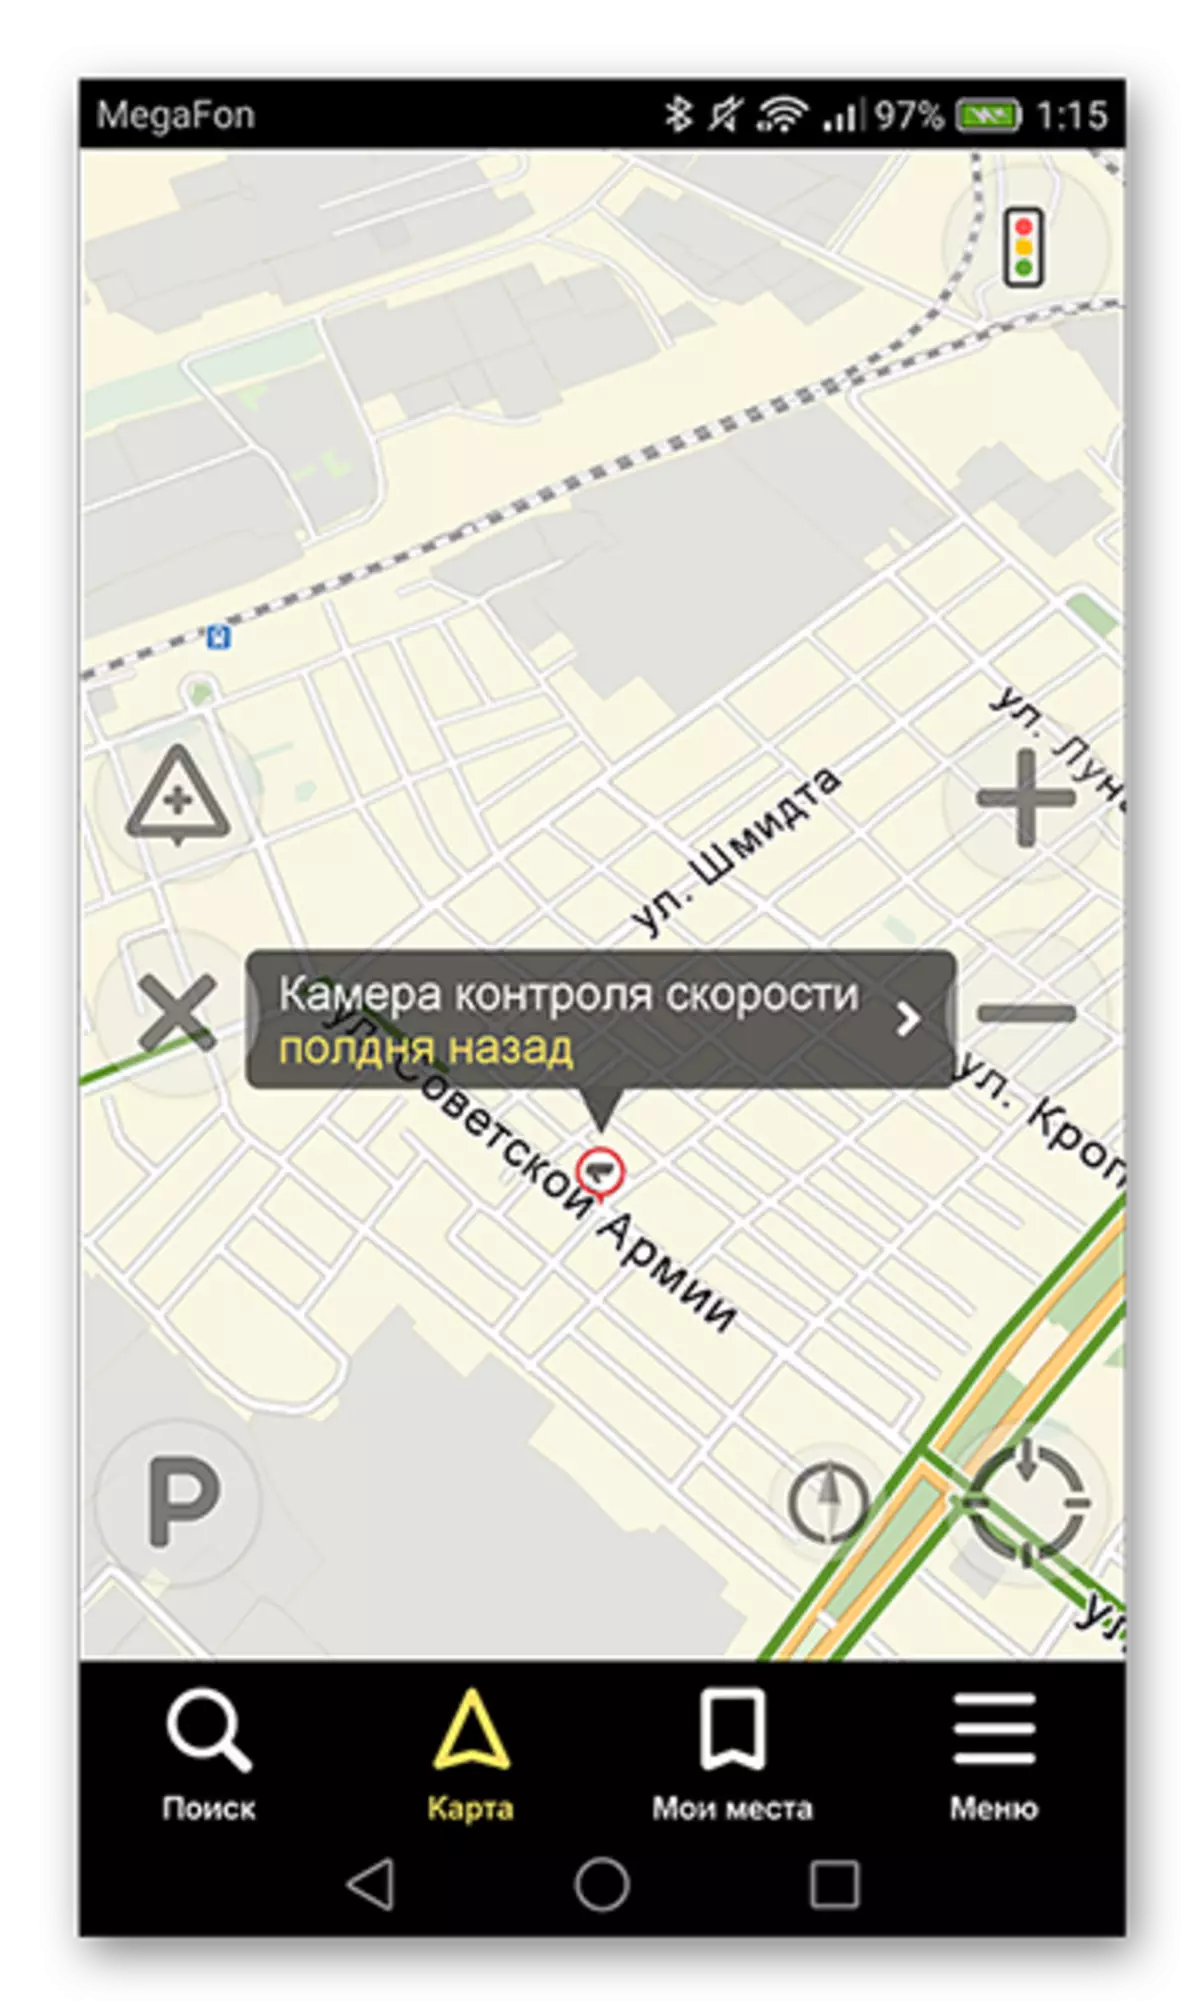 Įdiegtas įvykis kelyje Yandex. Navigator programa